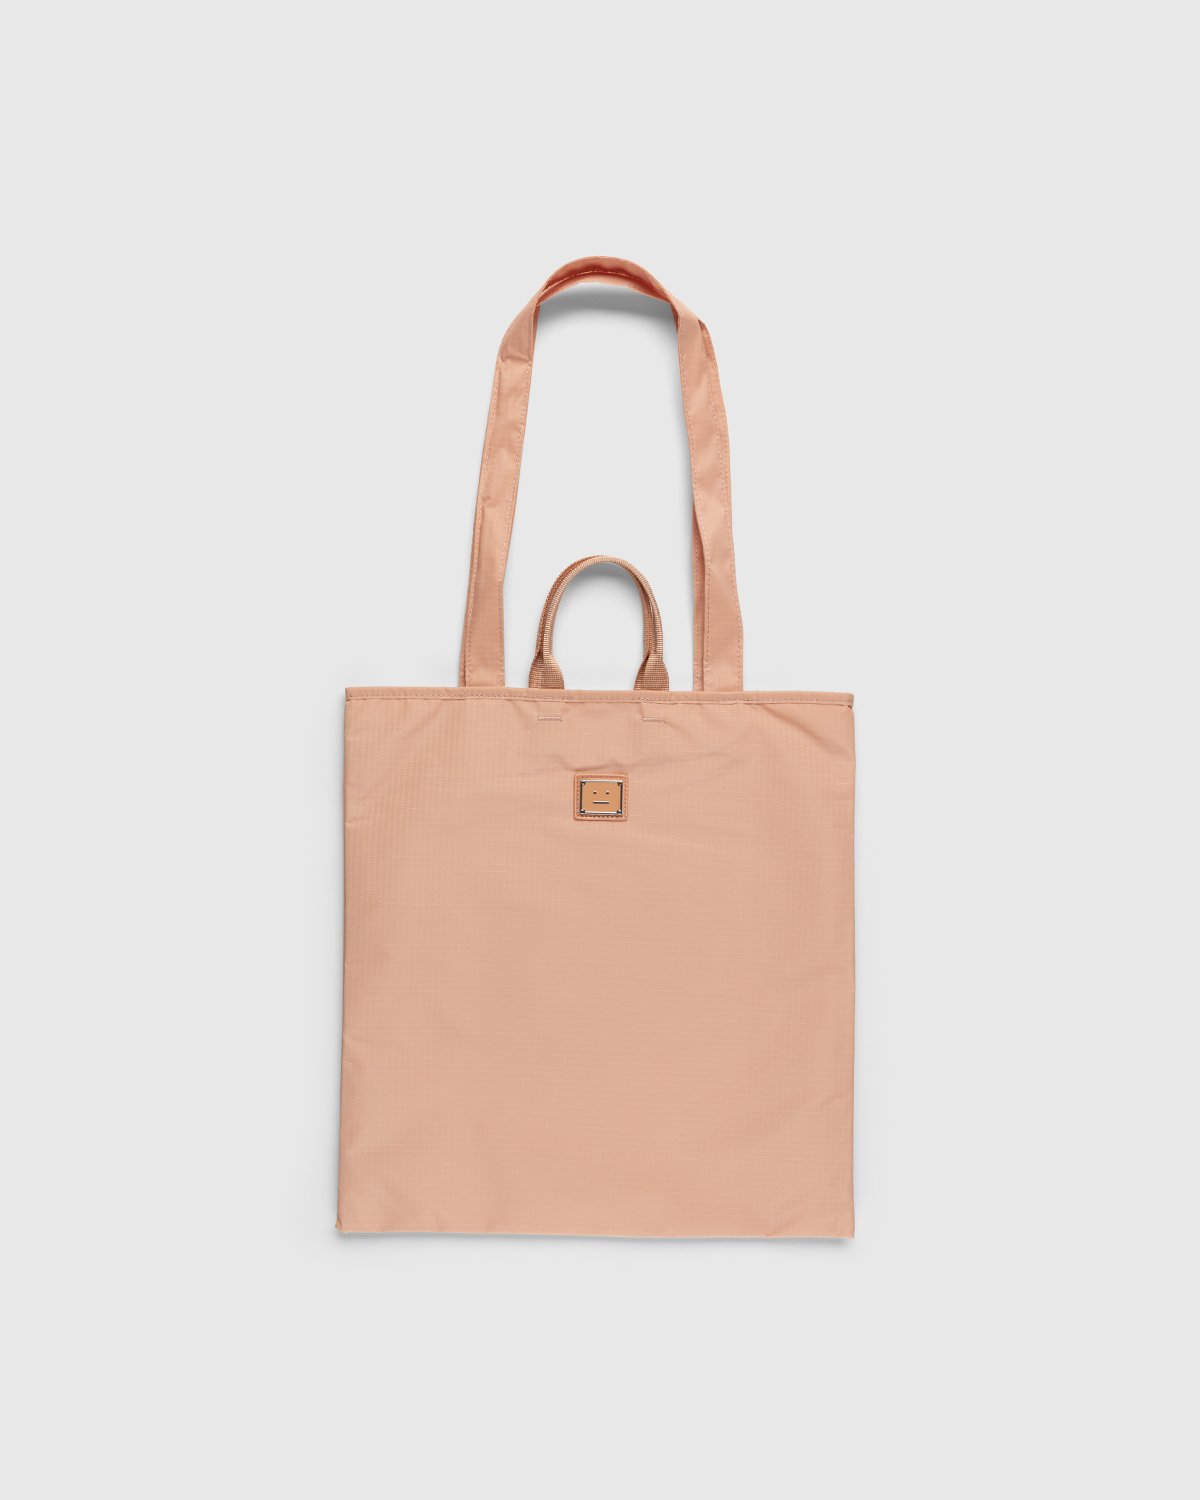 Acne Studios - Shoulder Tote Bag Peach Orange - Accessories - Orange - Image 1